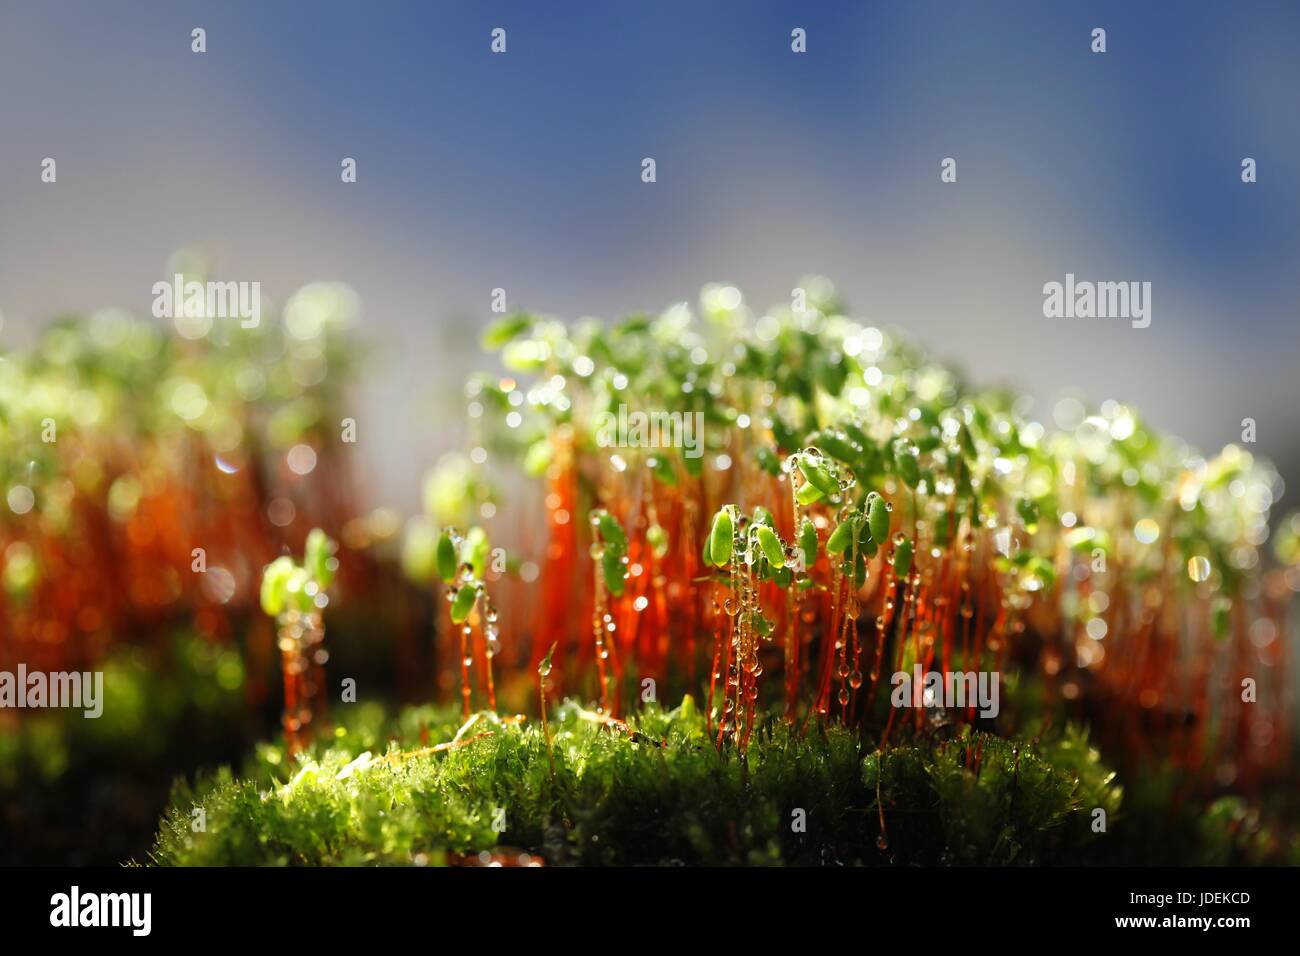 Spore capsules of a green moss, Pohlia nutans Stock Photo